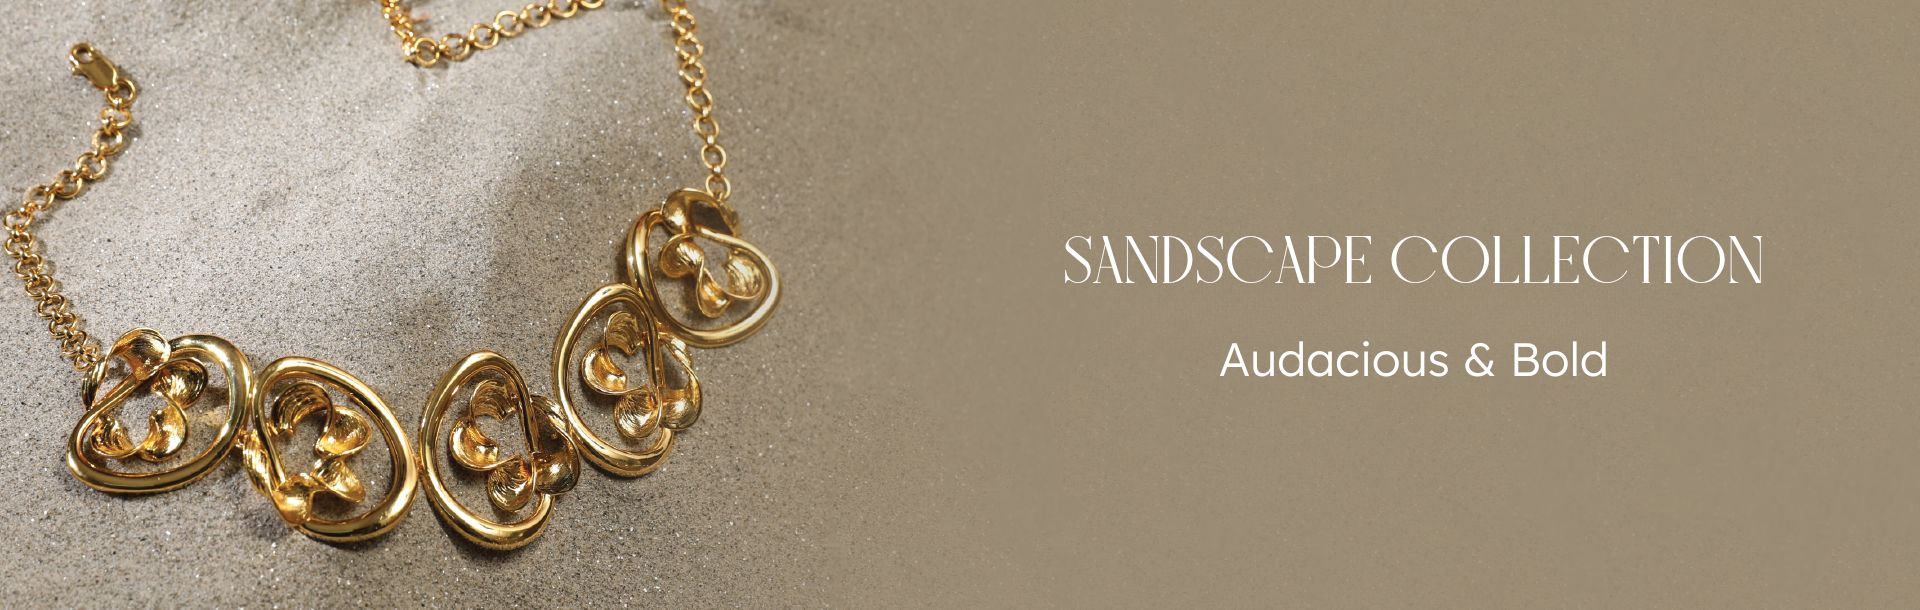 Sandscape Collection